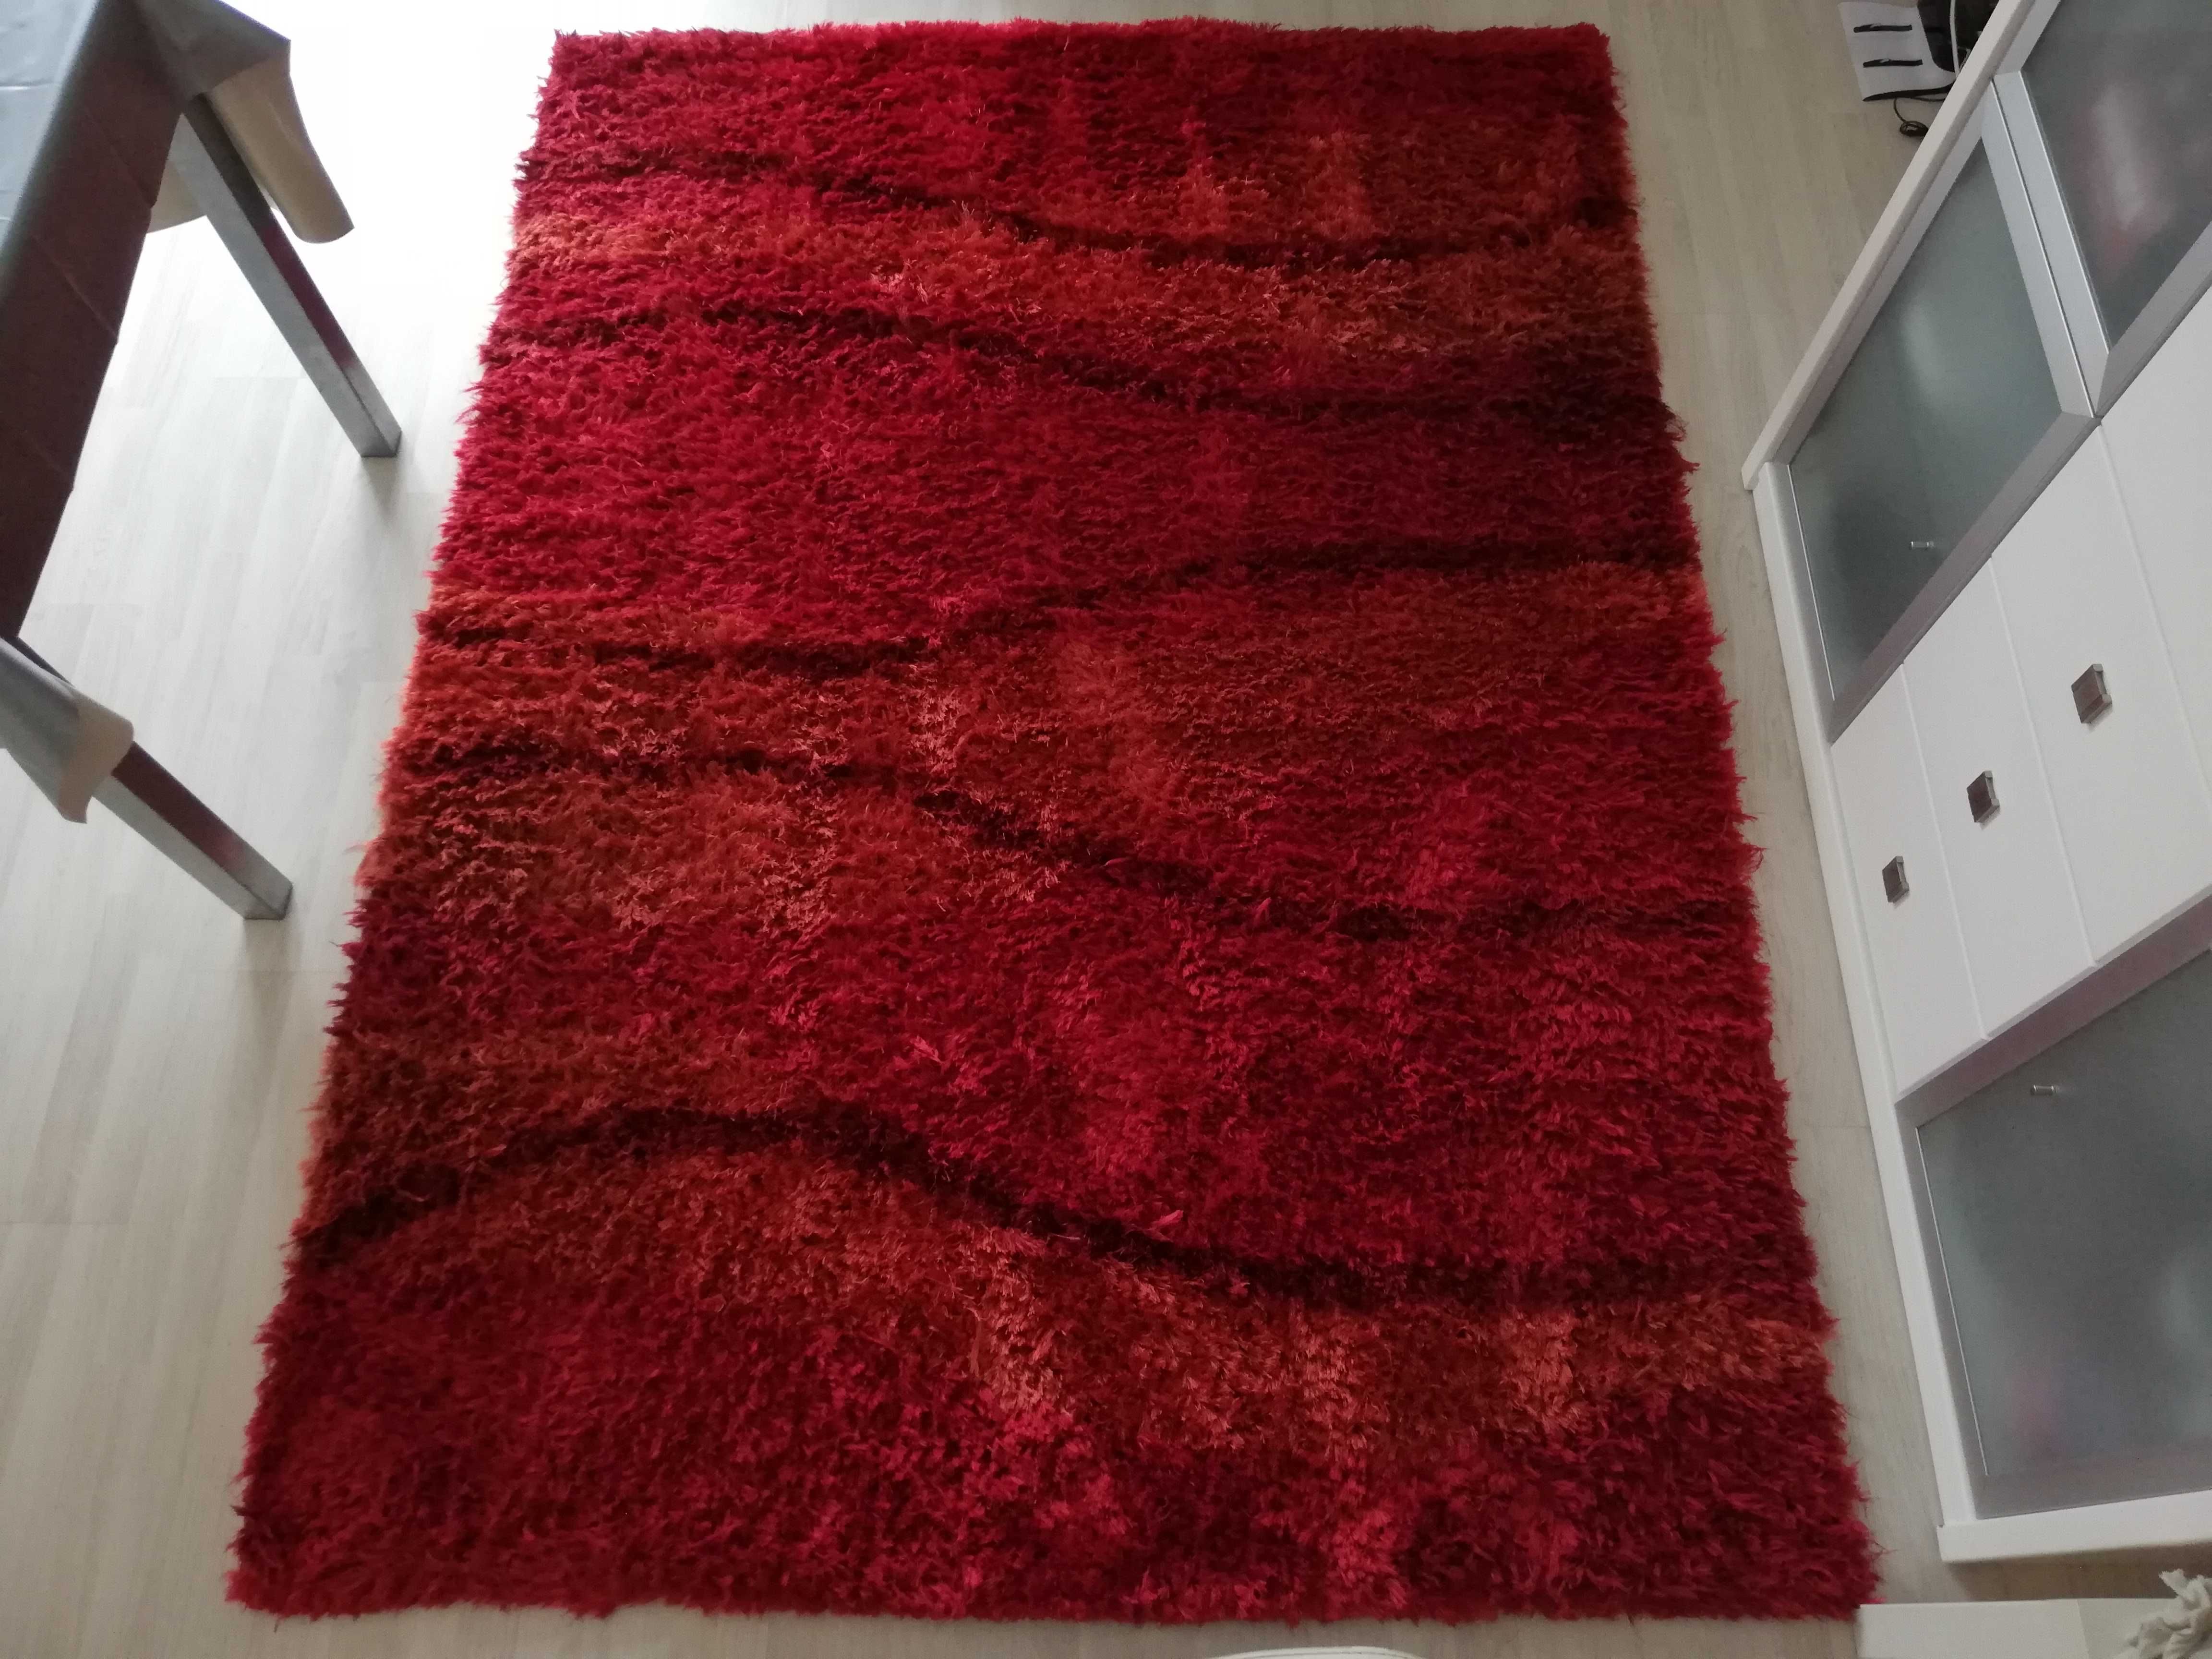 Carpete "Shaggy Charming" 230x160cm vermelho - em excelente estado!